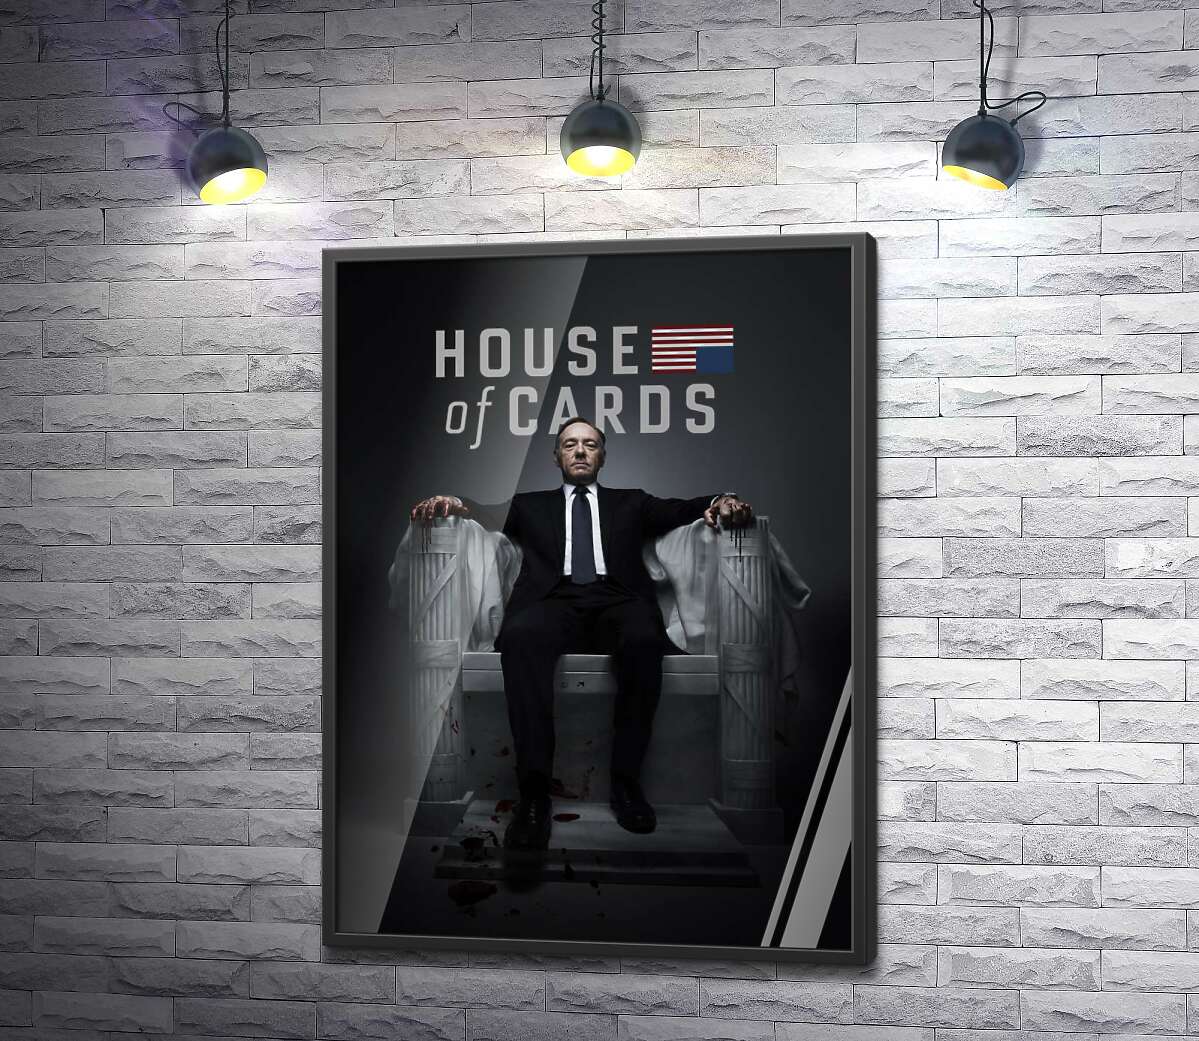 постер Фрэнсис Андервуд на интригующем постере к фильму "Карточный дом" ("House of cards")